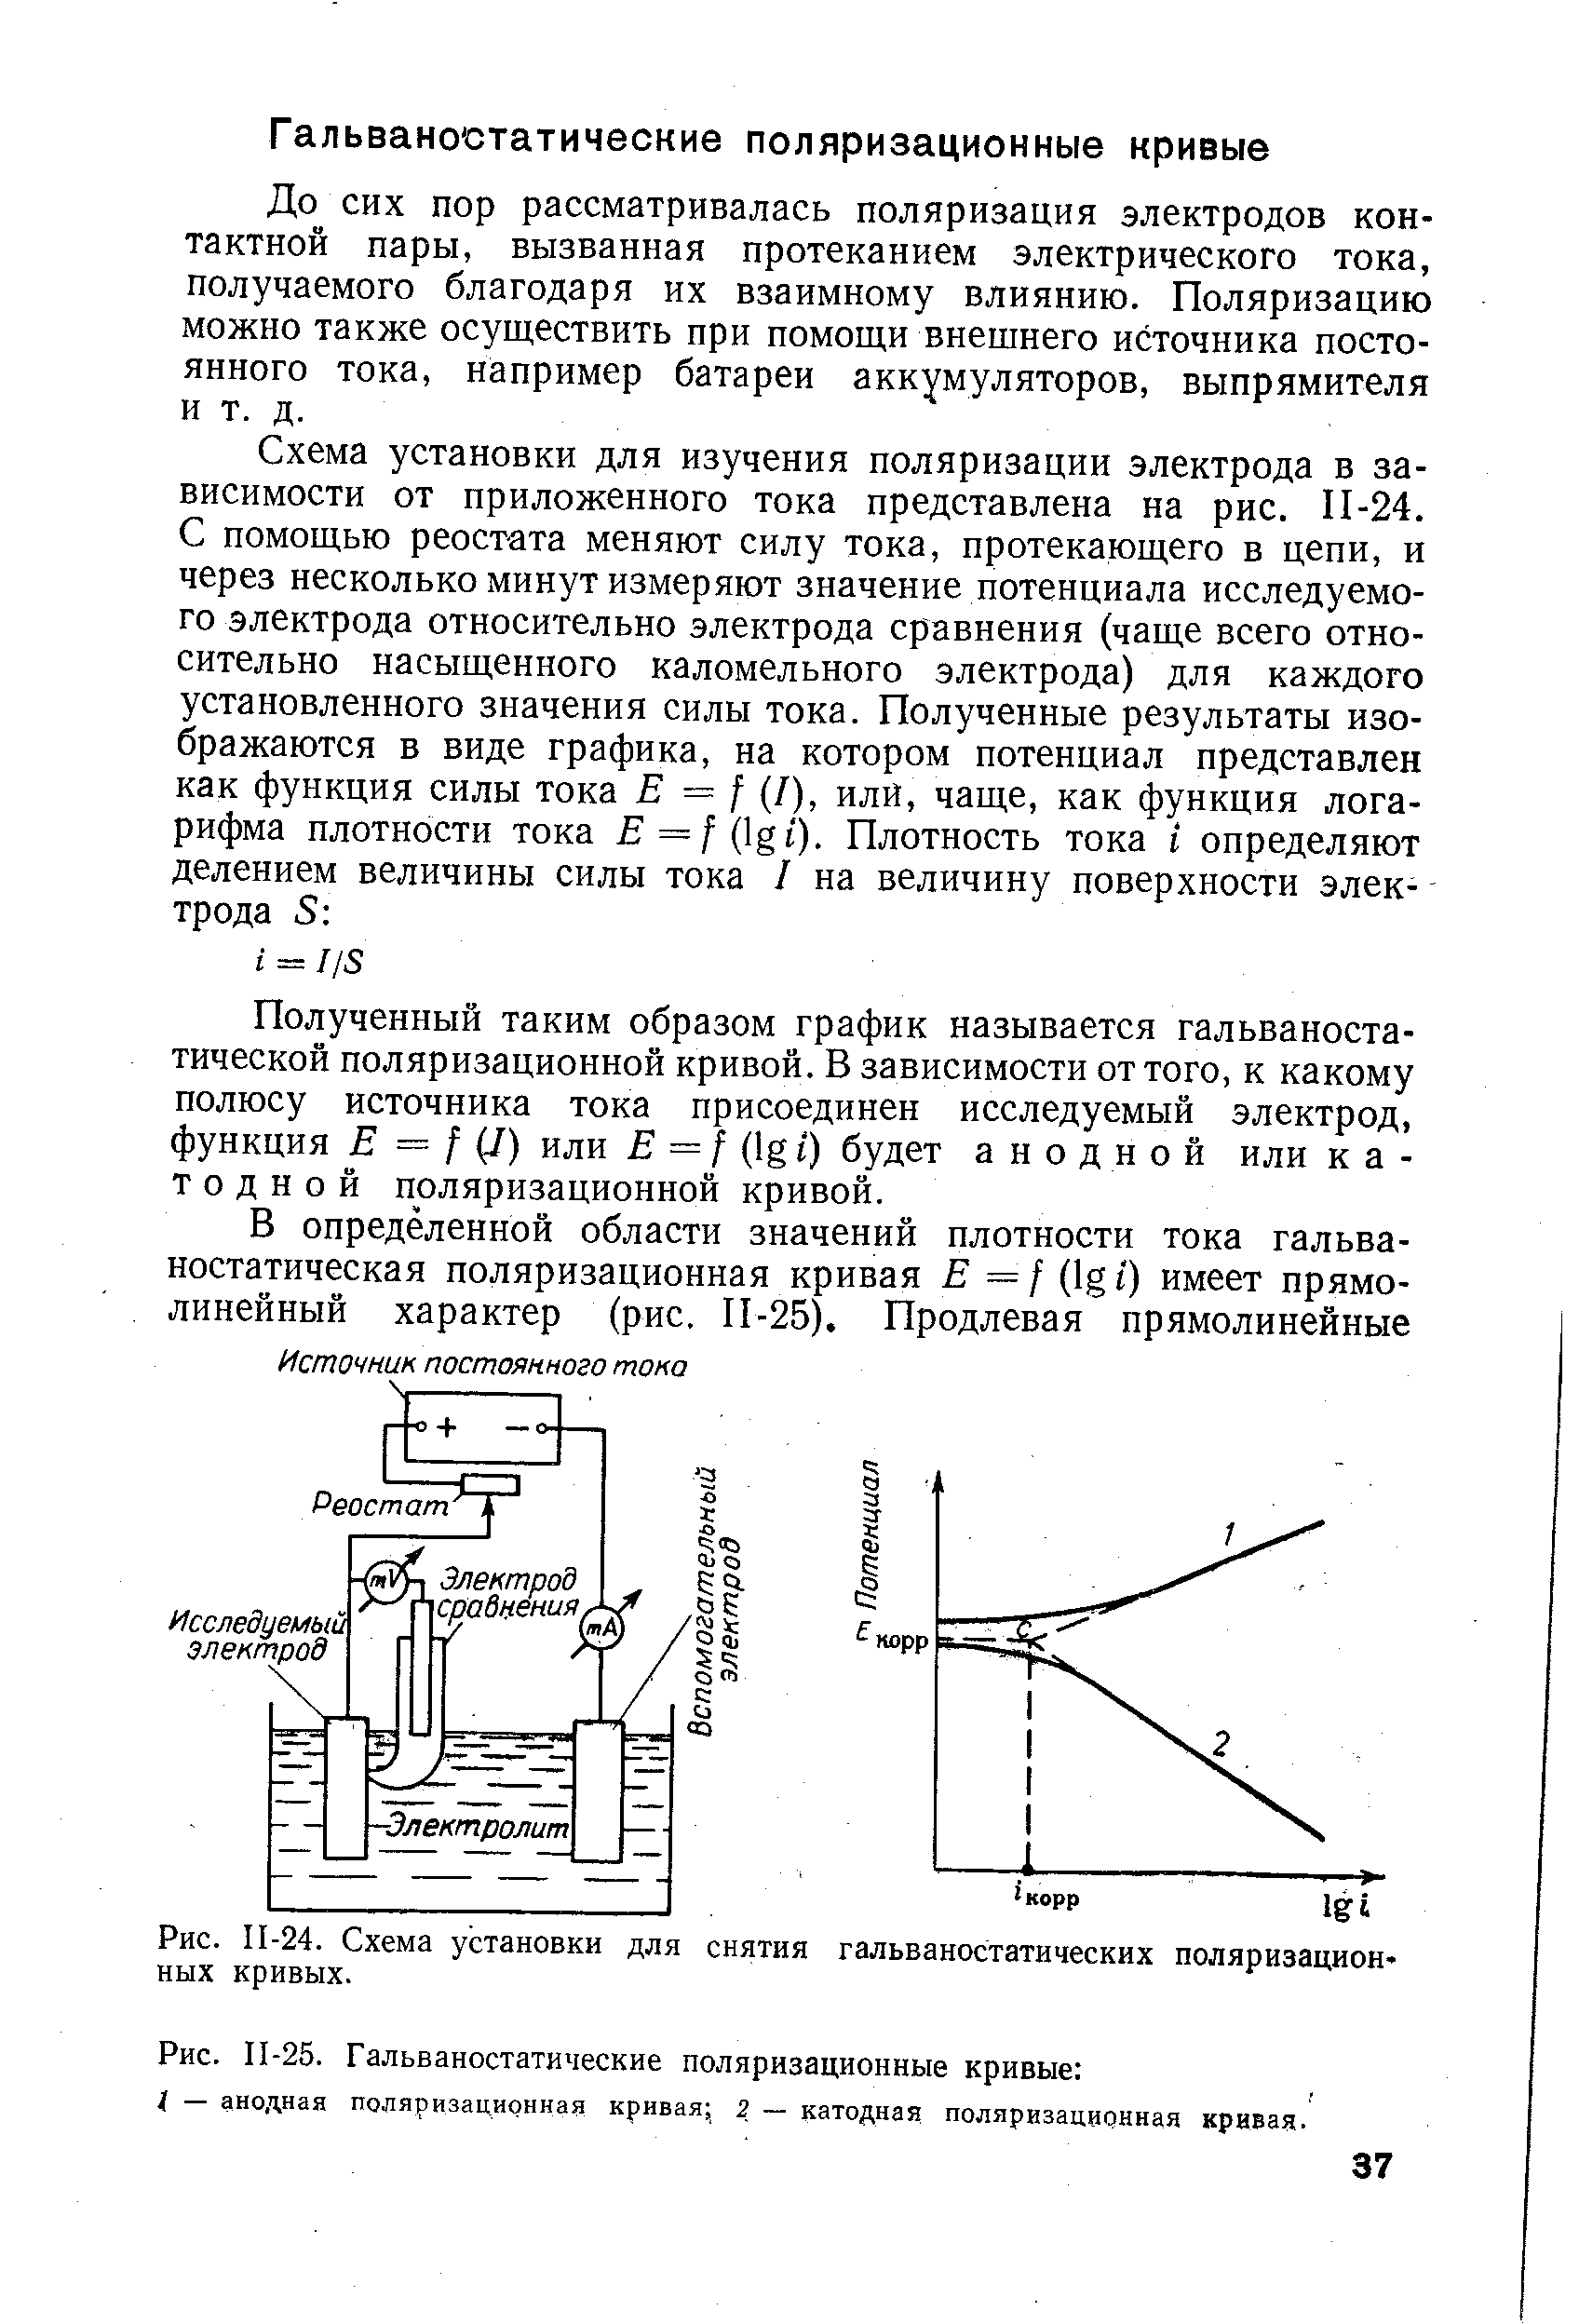 Рис. П-24. Схема установки для снятия гальваностатических поляризационных кривых.
